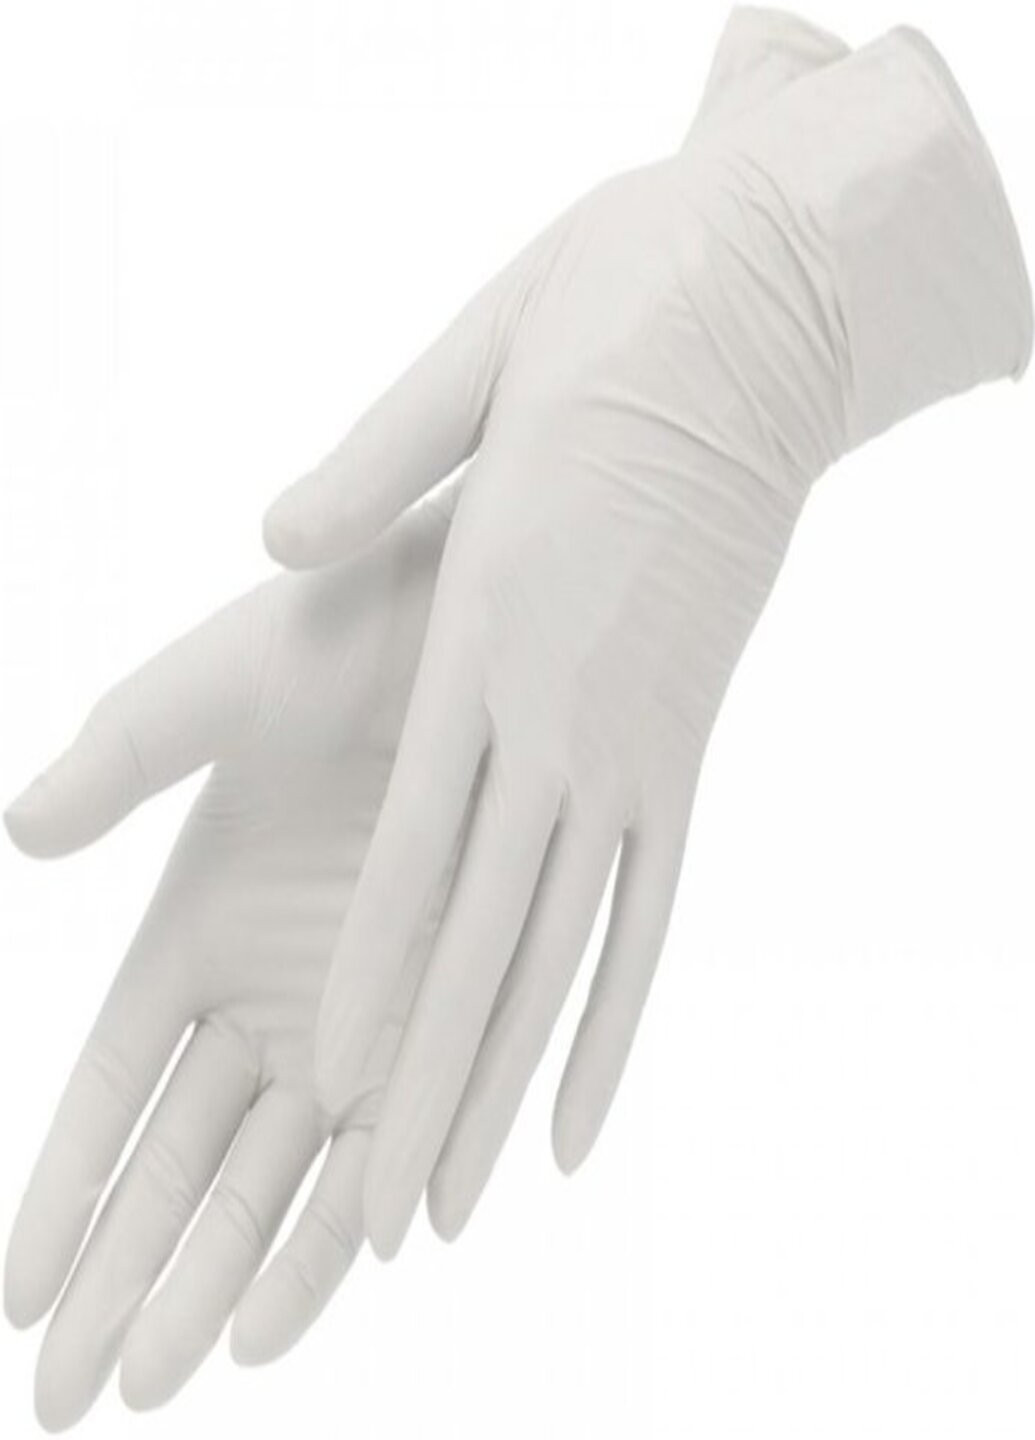 Латексные перчатки текстурированные без пудры L 100 шт. Белые (5,5 г.) Medicom (254085058)